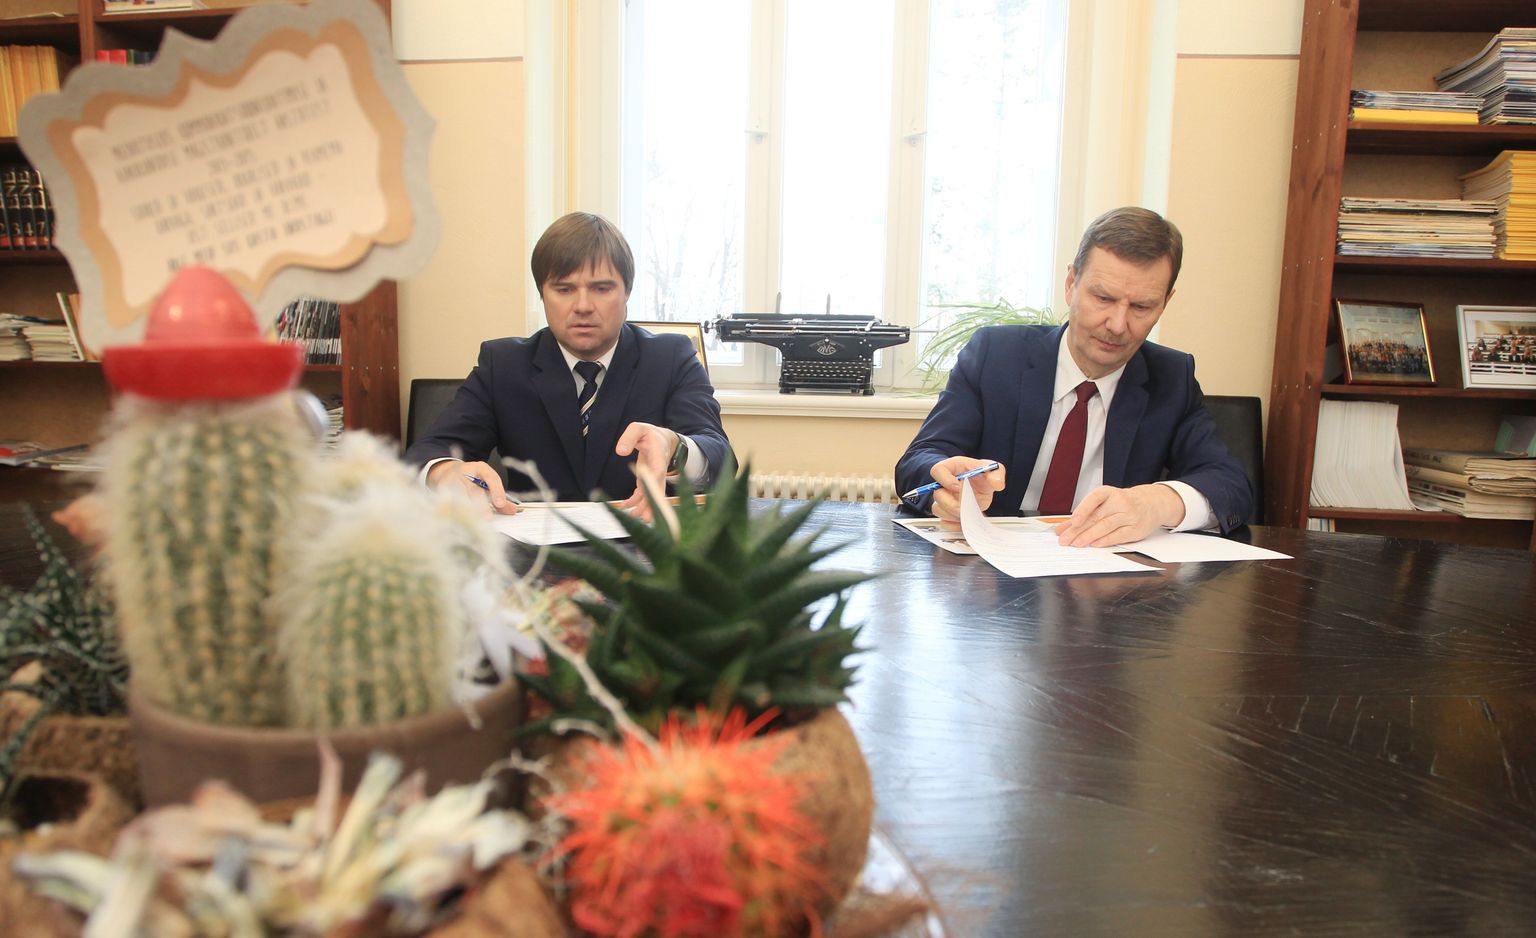 Eesti Meedia juhatuse esimees Sven Nuutmann (vasakul) ja Tartu Ülikooli rektor Volli Kalm allkirjastasid eile koostöölepingu.